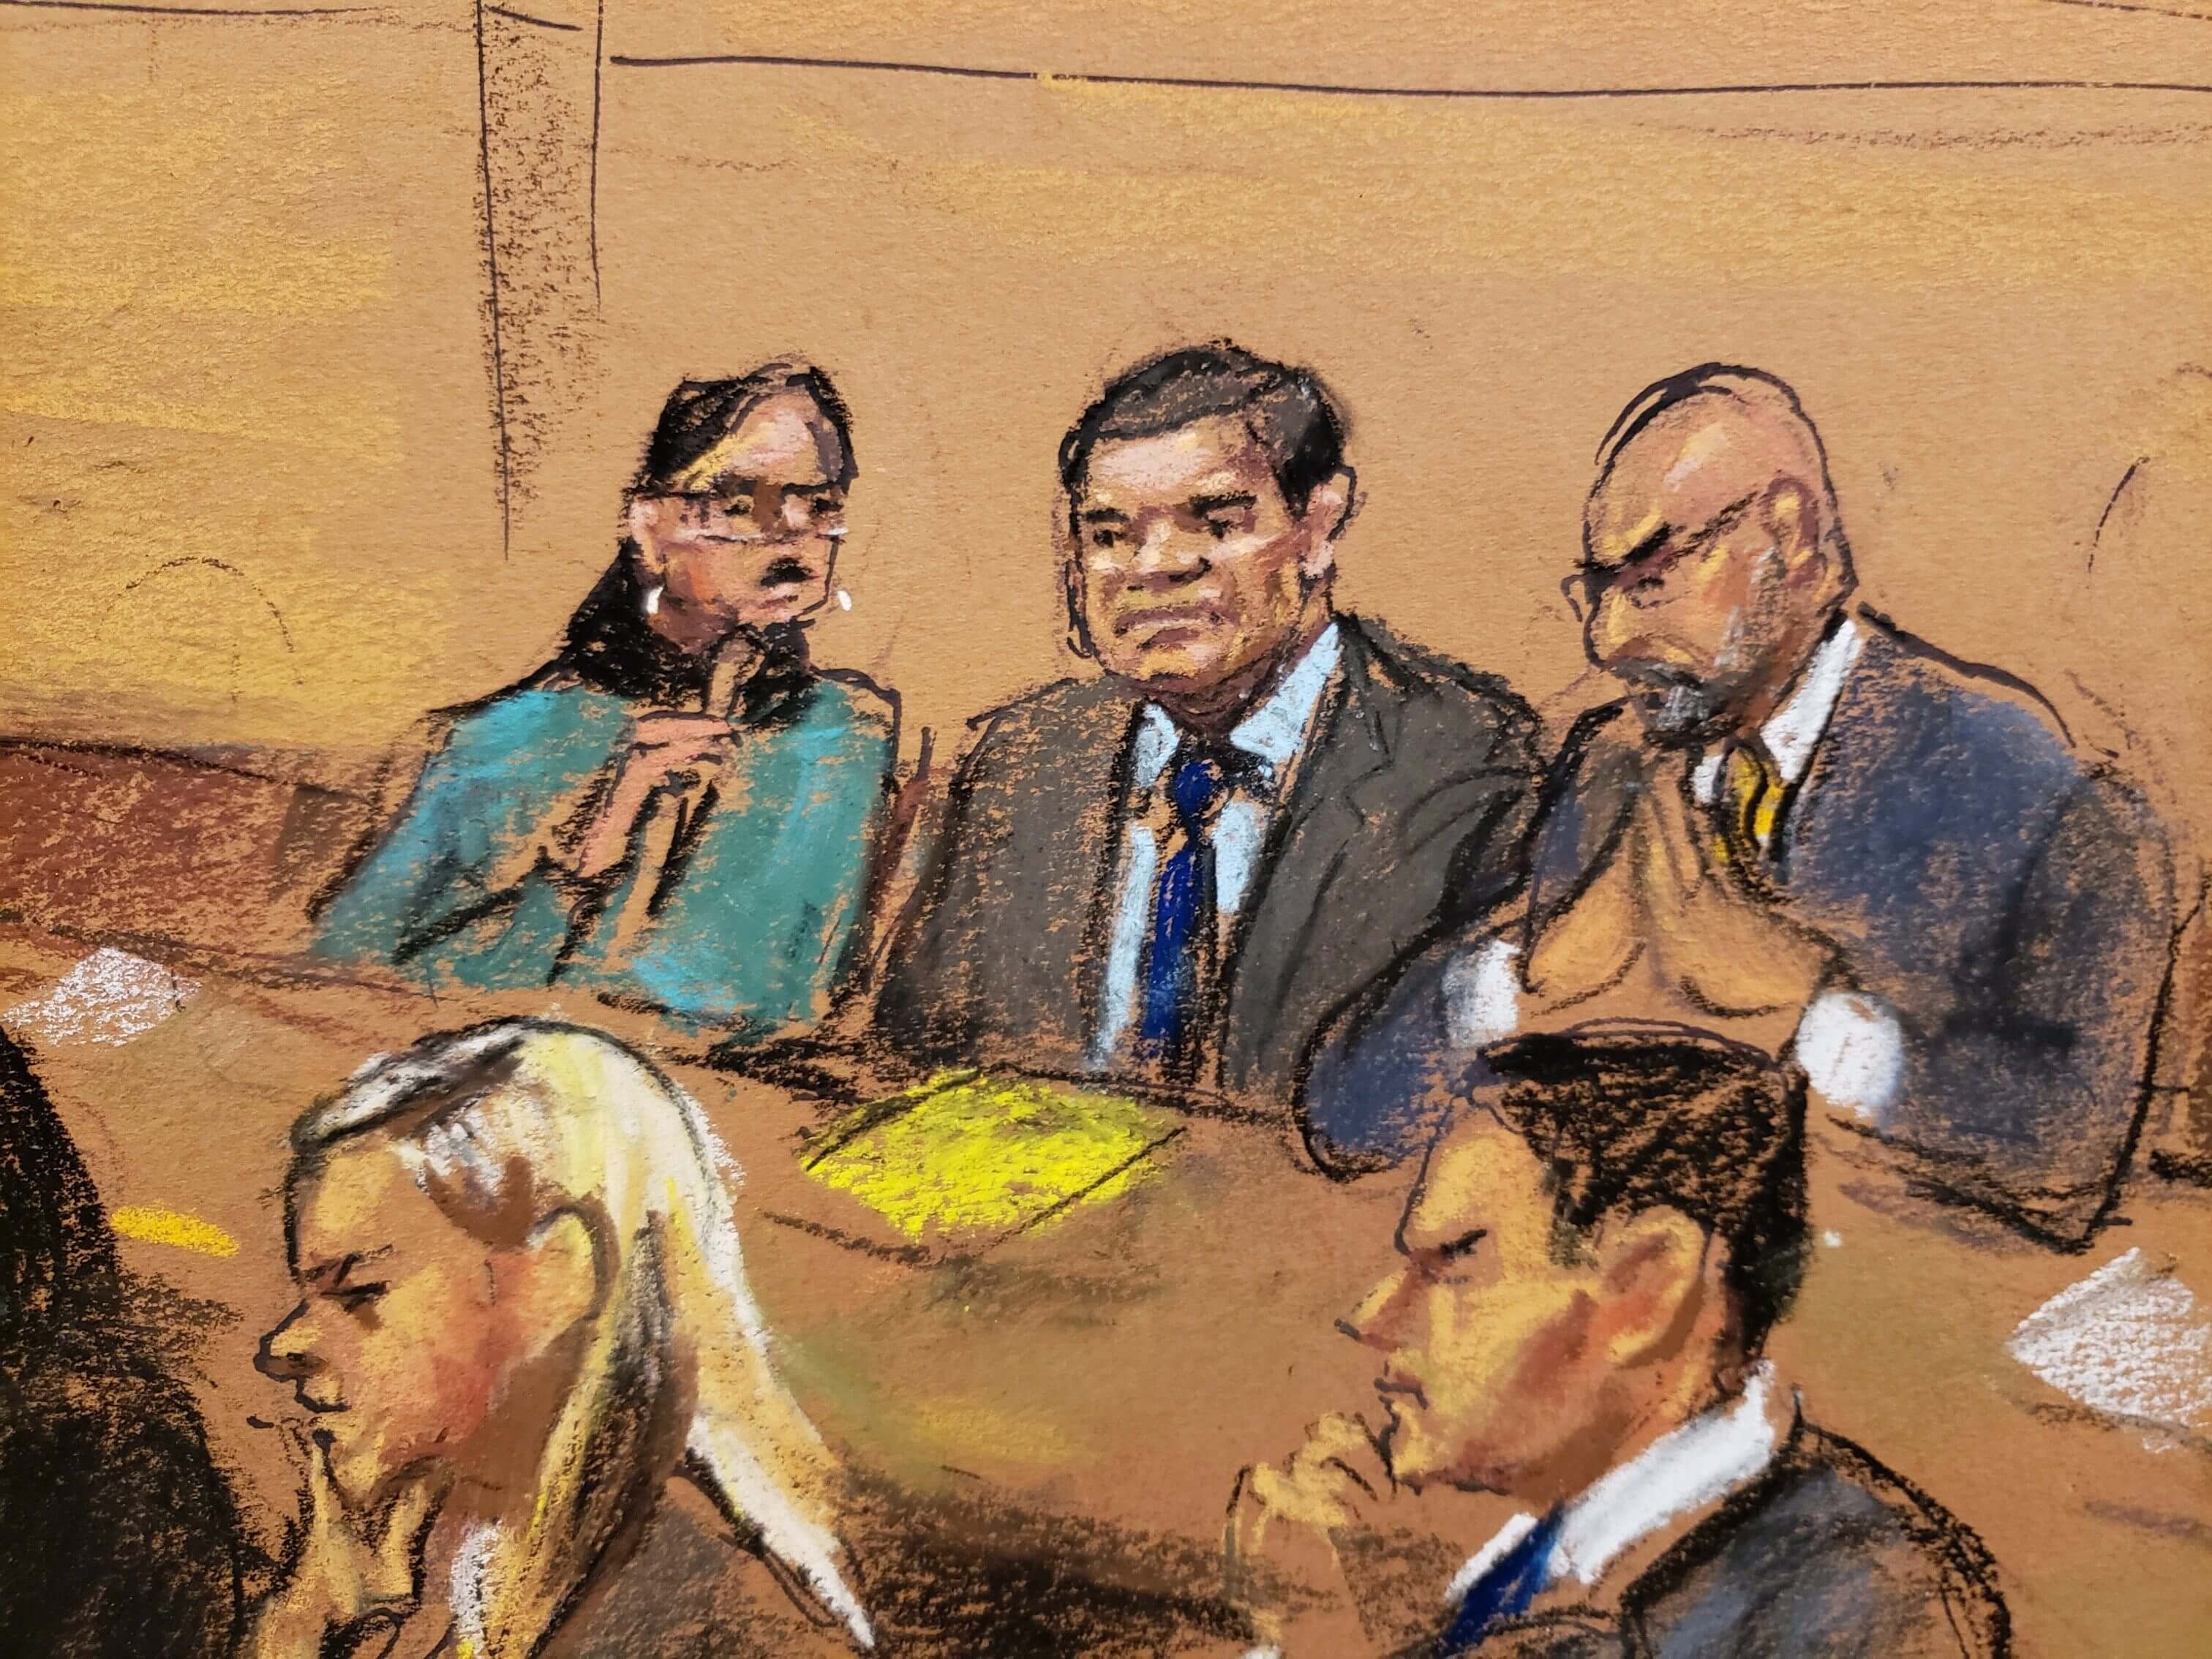 Fot: Boceto del juicio del narcotraficante Joaquín “El Chapo” Guzmán del 30 de enero del 2019